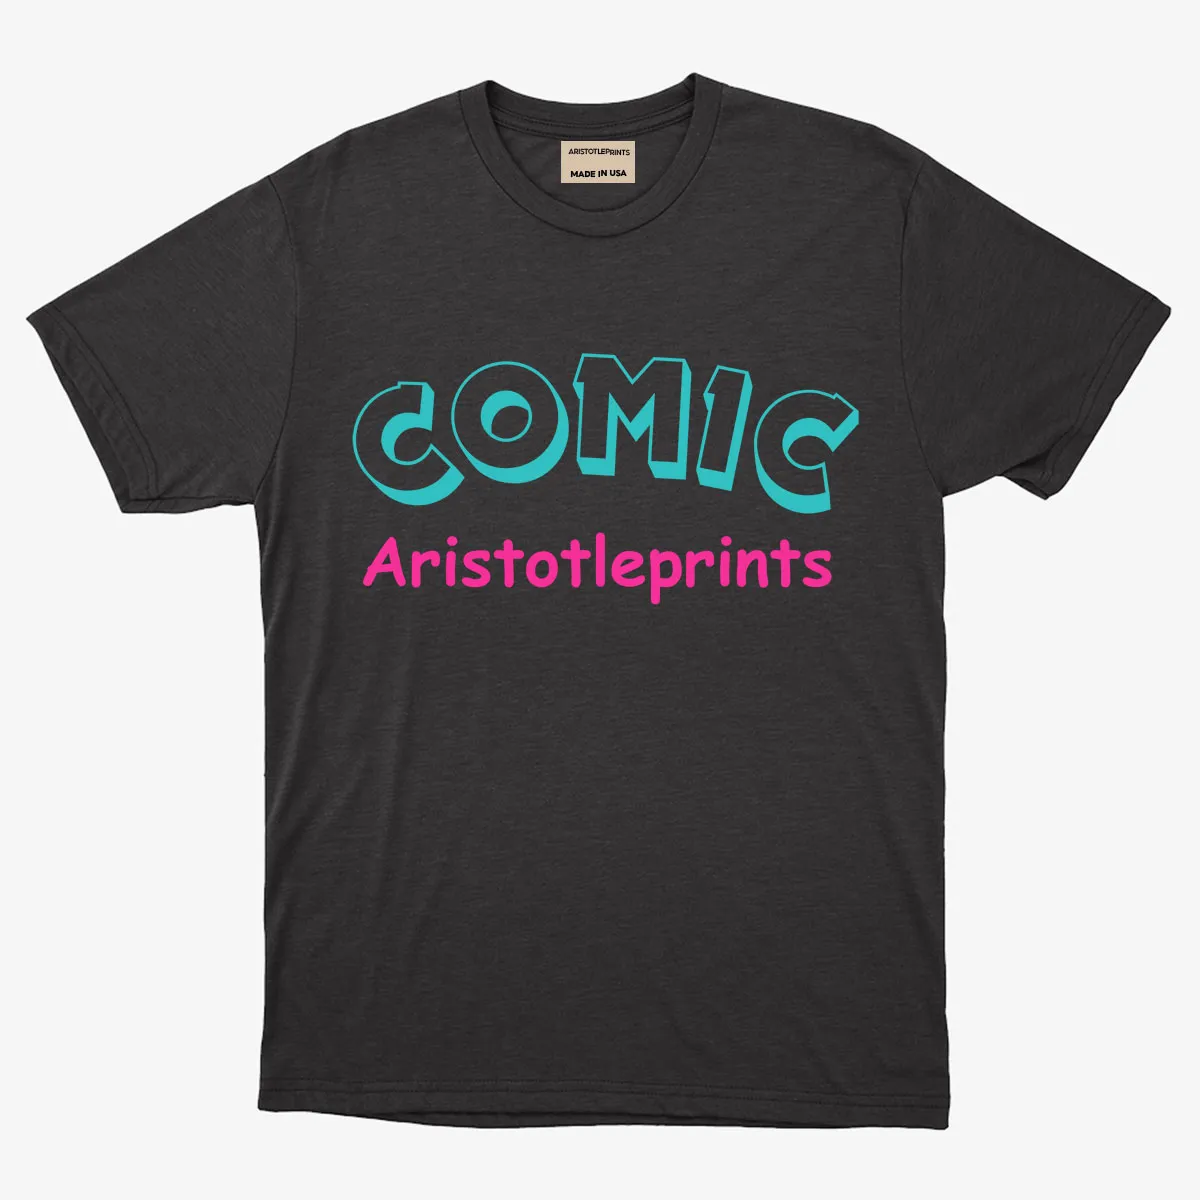 Comic Aristotleprints Tee - Black